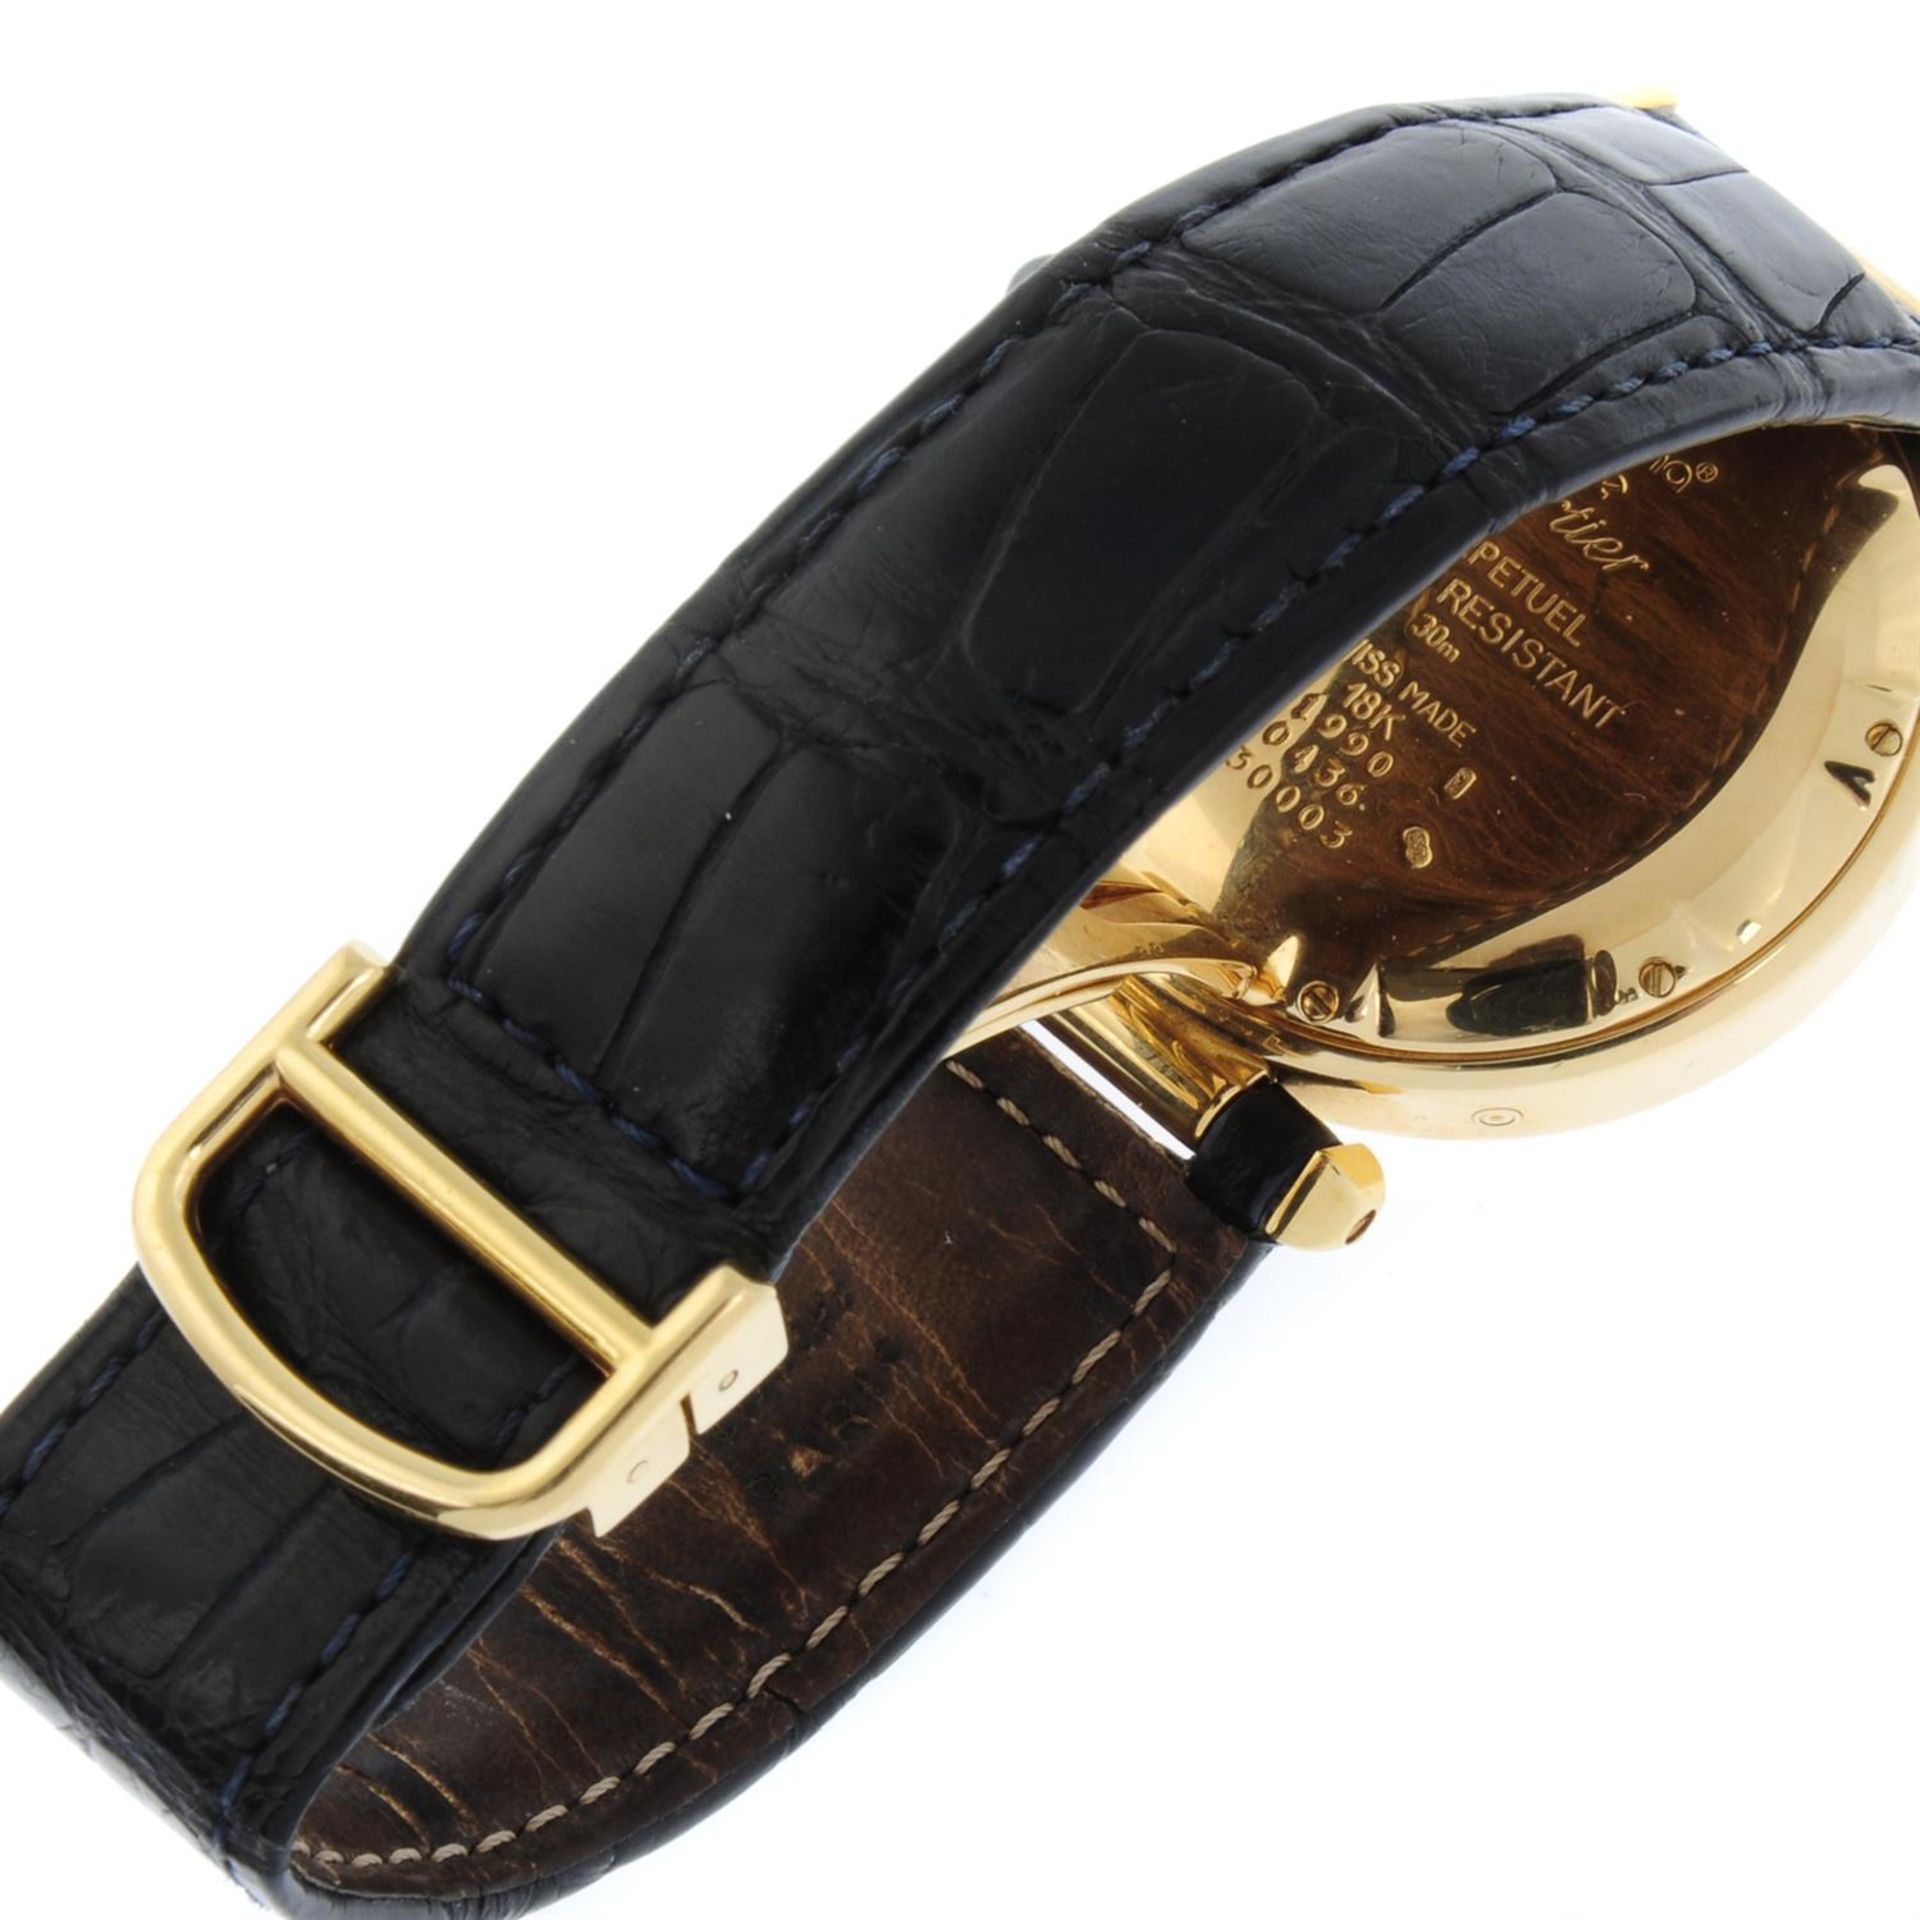 CARTIER - an 18ct yellow gold Pasha perpetual calendar wrist watch, 38mm. - Bild 2 aus 5